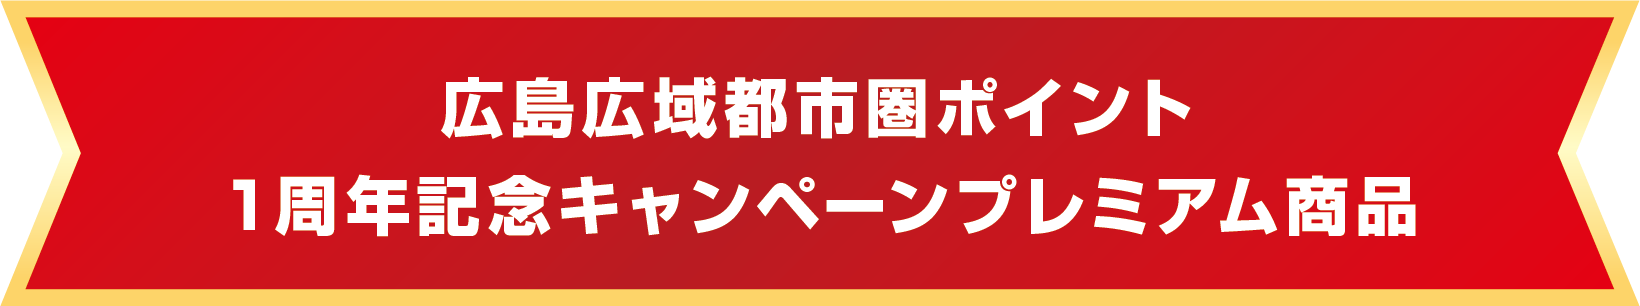 広島広域都市圏ポイント 1周年記念キャンペーンプレミアム商品